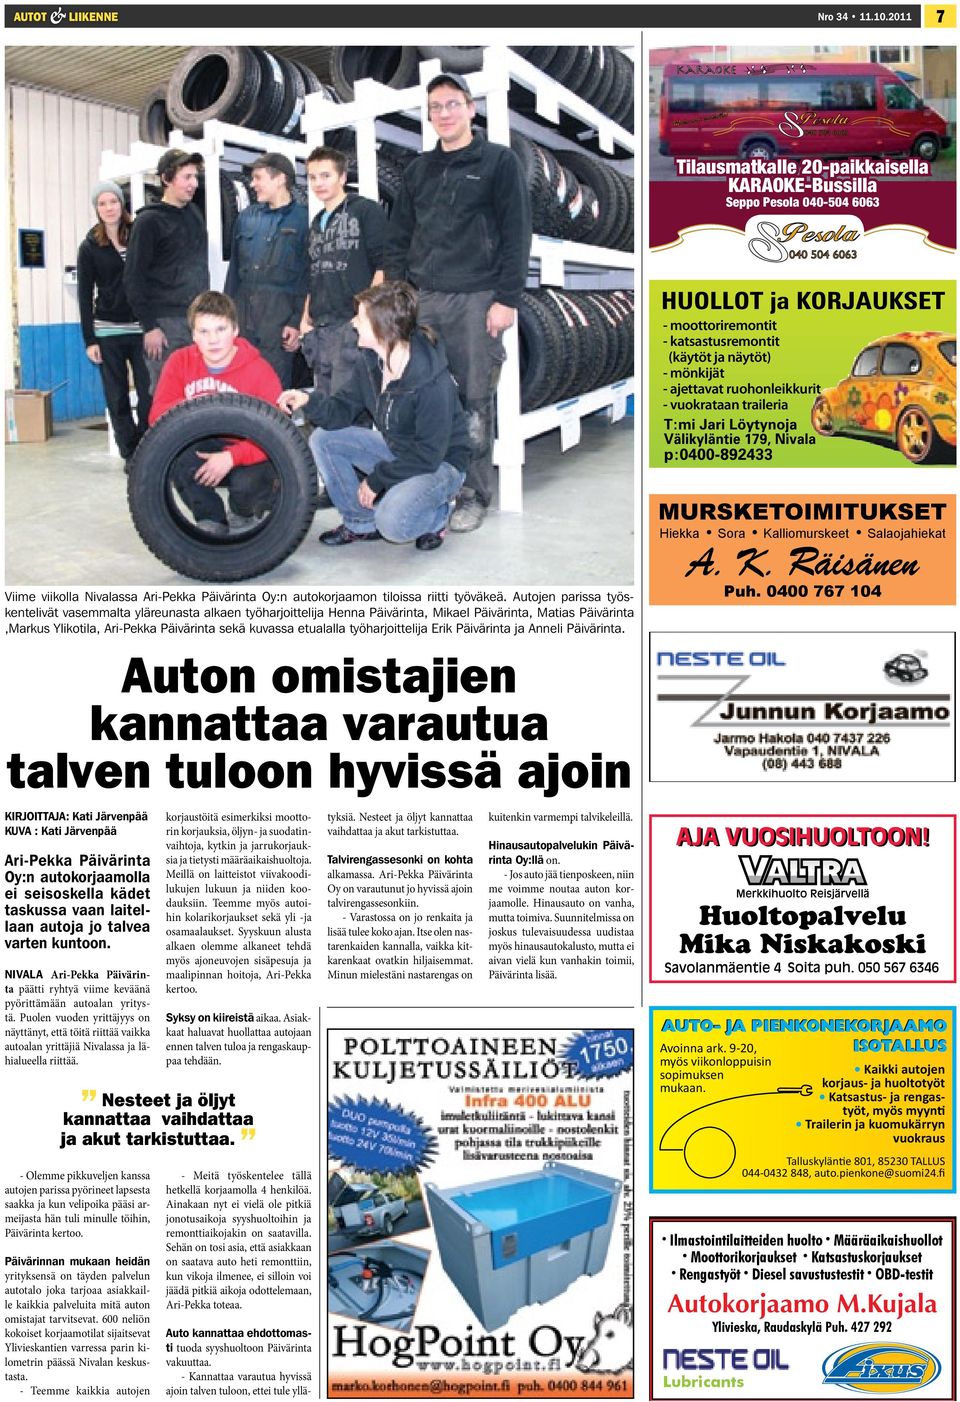 traileria Viime viikolla Nivalassa Ari-Pekka Päivärinta Oy:n autokorjaamon tiloissa riitti työväkeä.